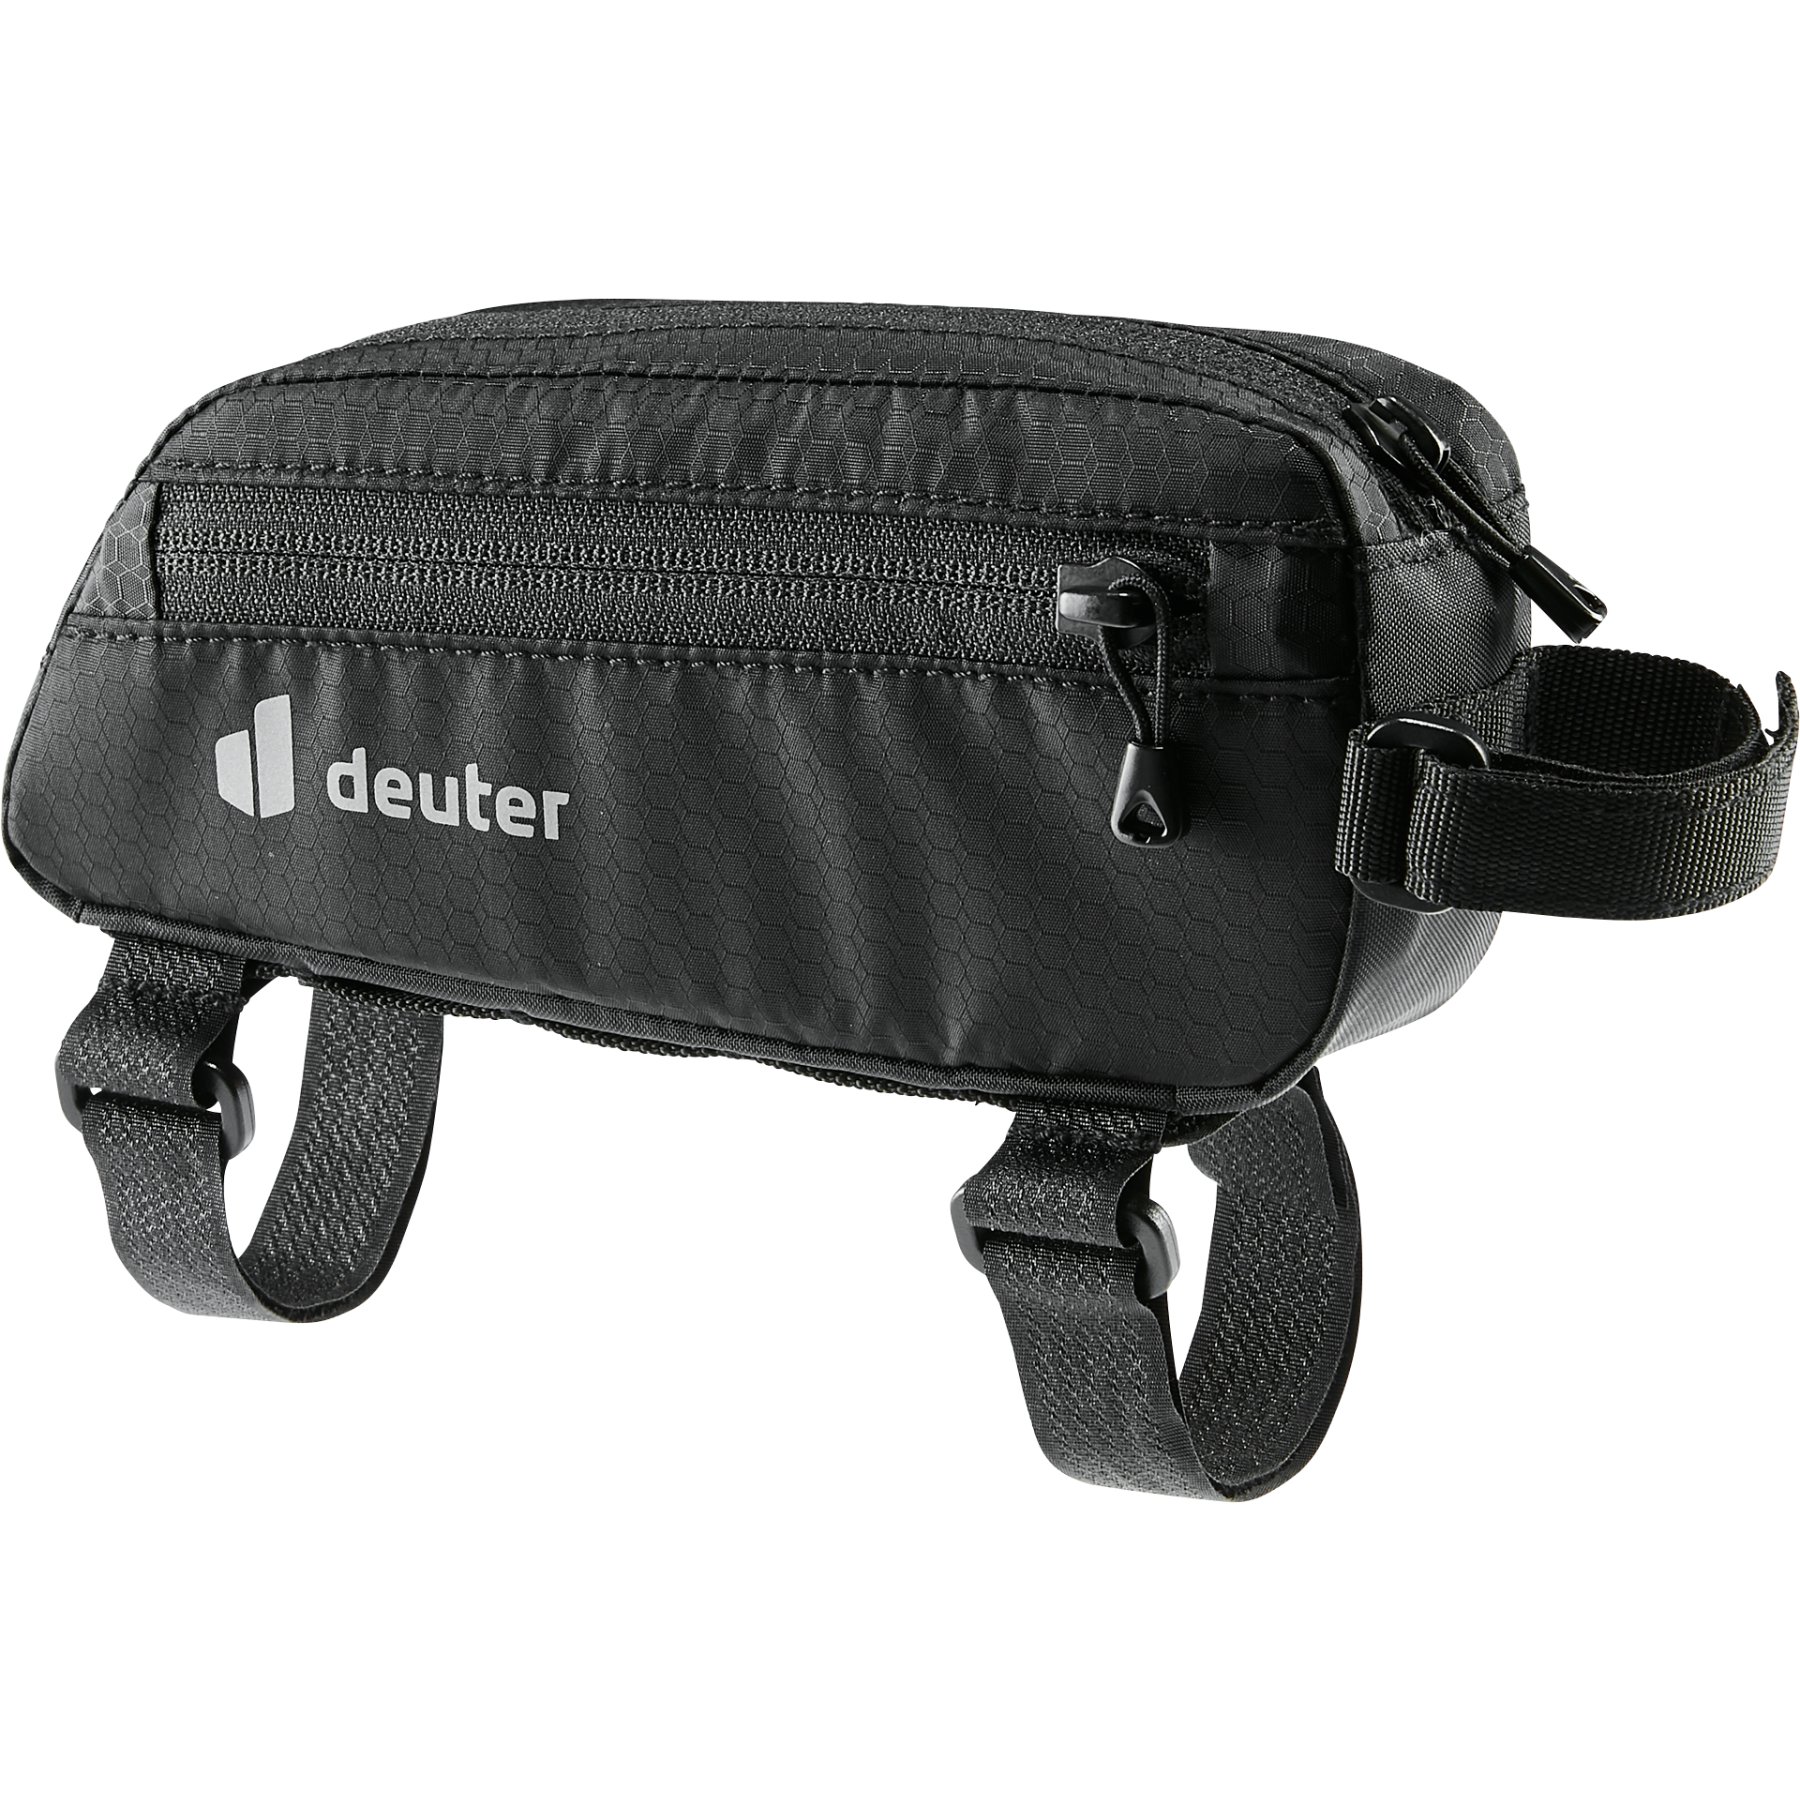 Productfoto van Deuter Energy Bag 0.5 Tas voor de Bovenbuis - Black